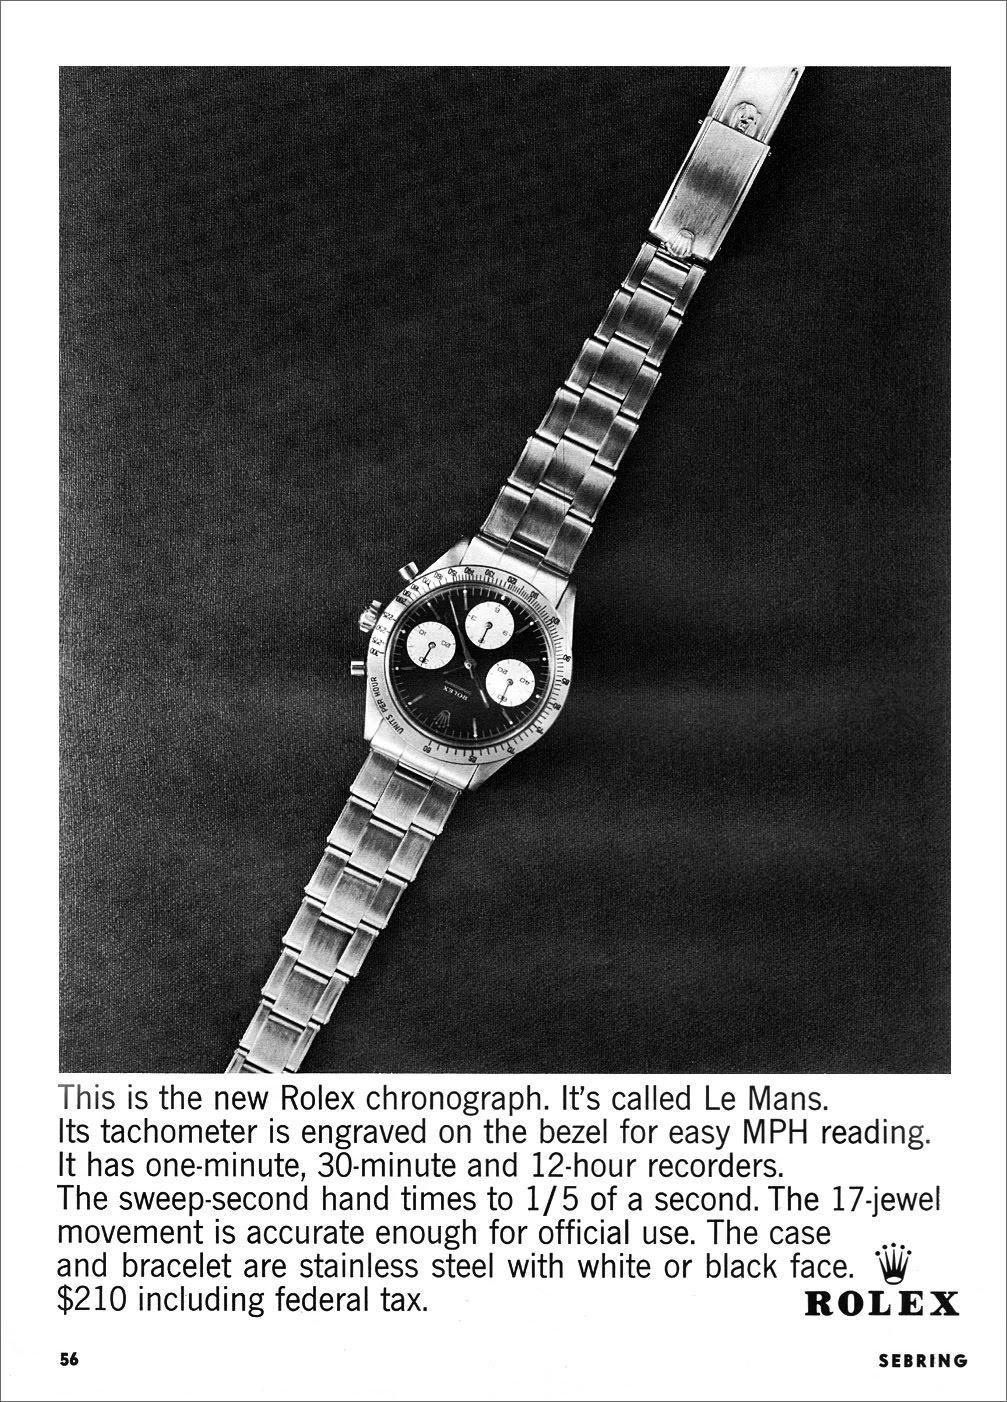 Publicité Rolex Chronograph "Le Mans" from 1964